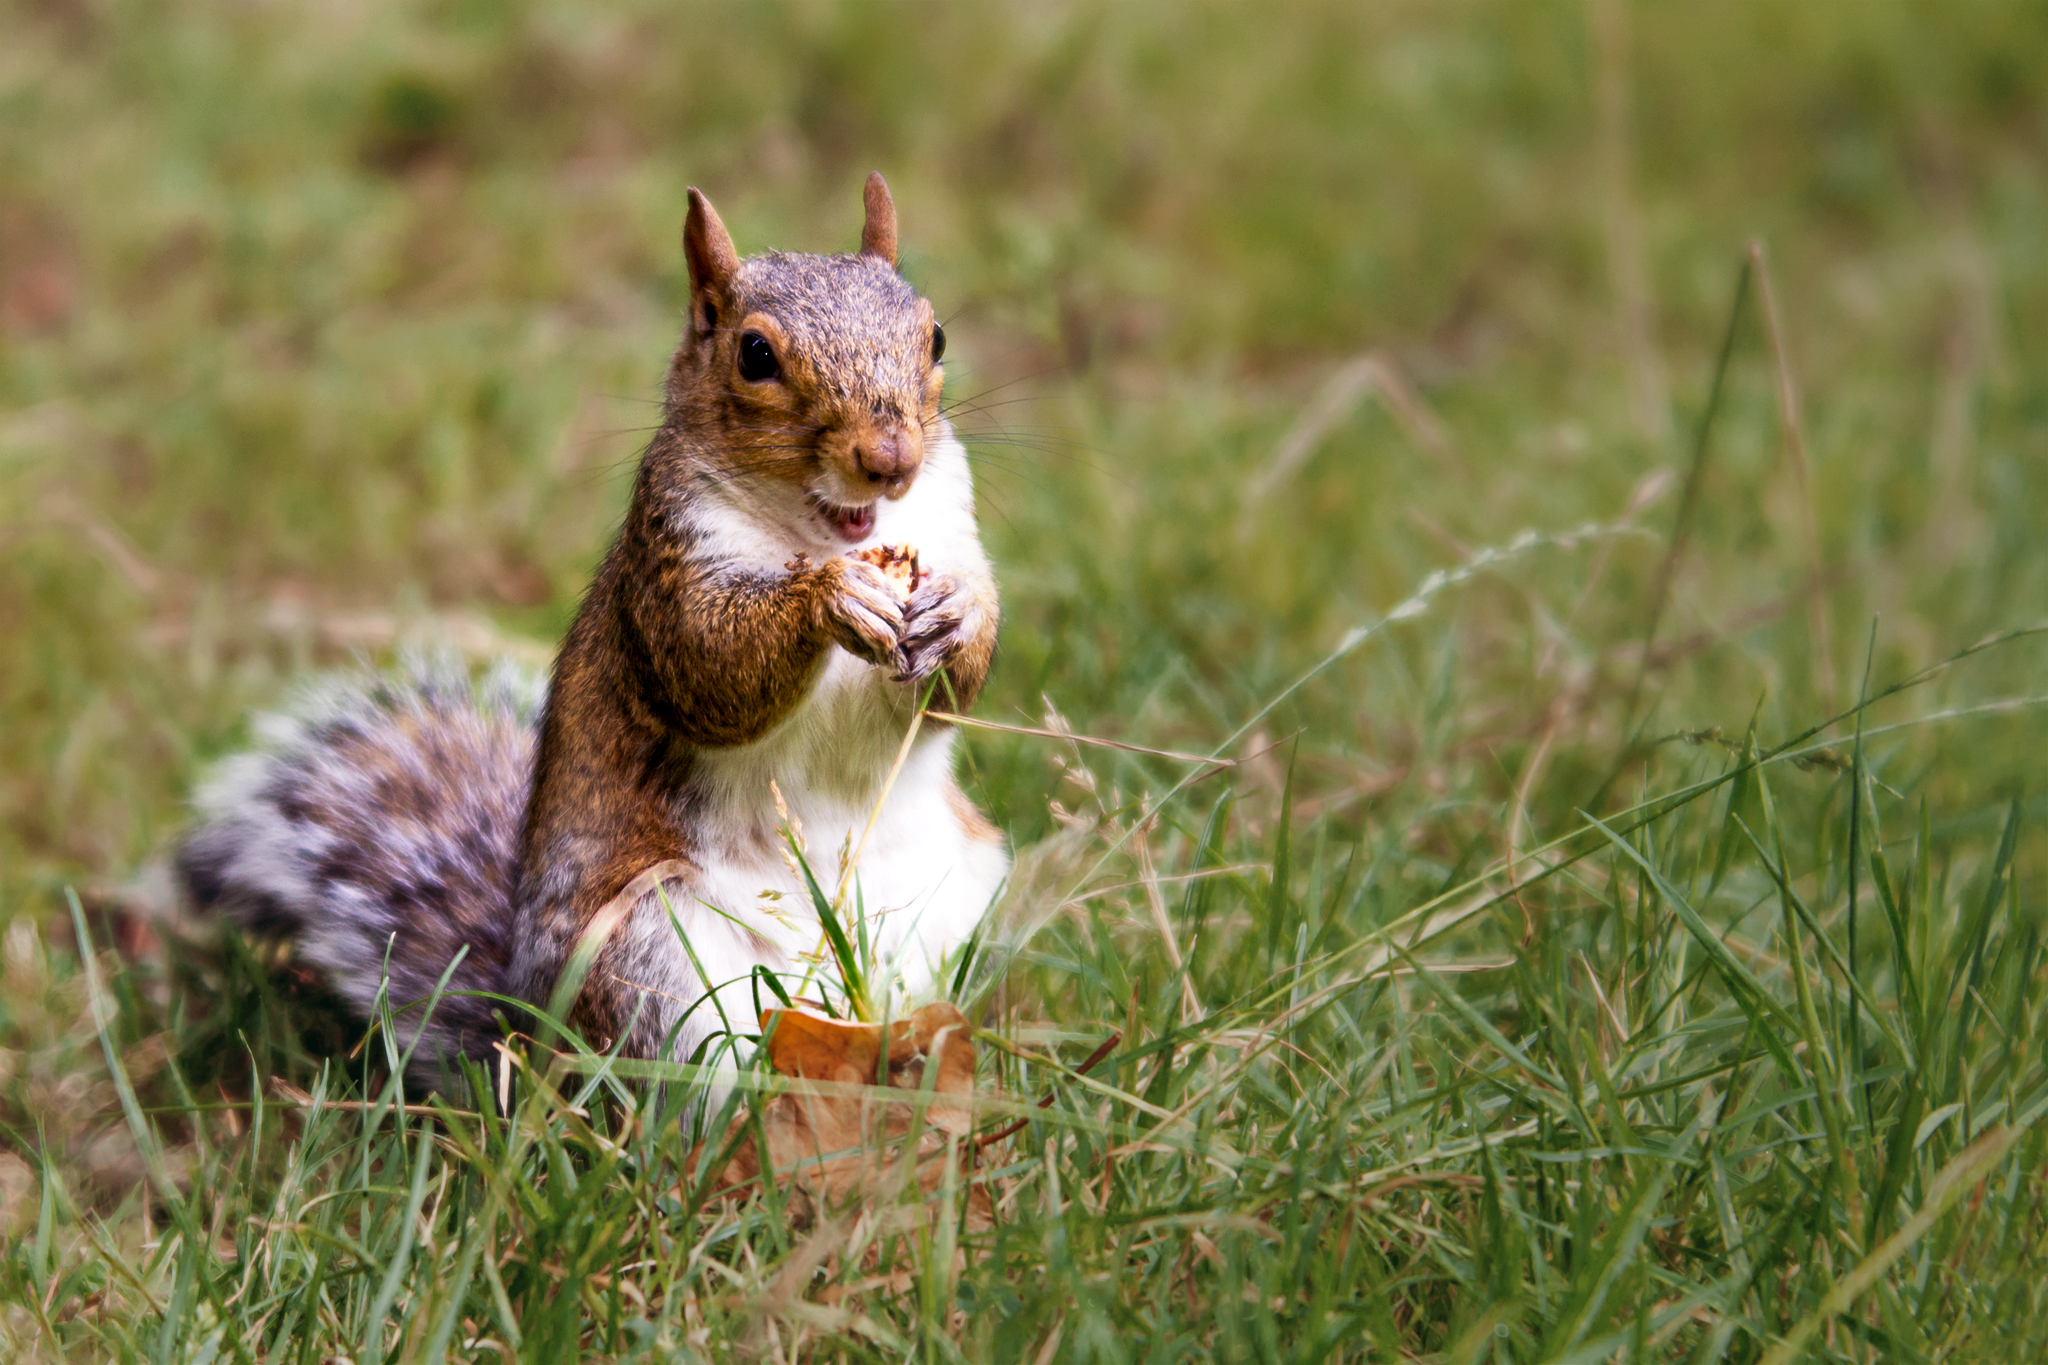 Capturing Nature in Autumn - Happy Squirrel